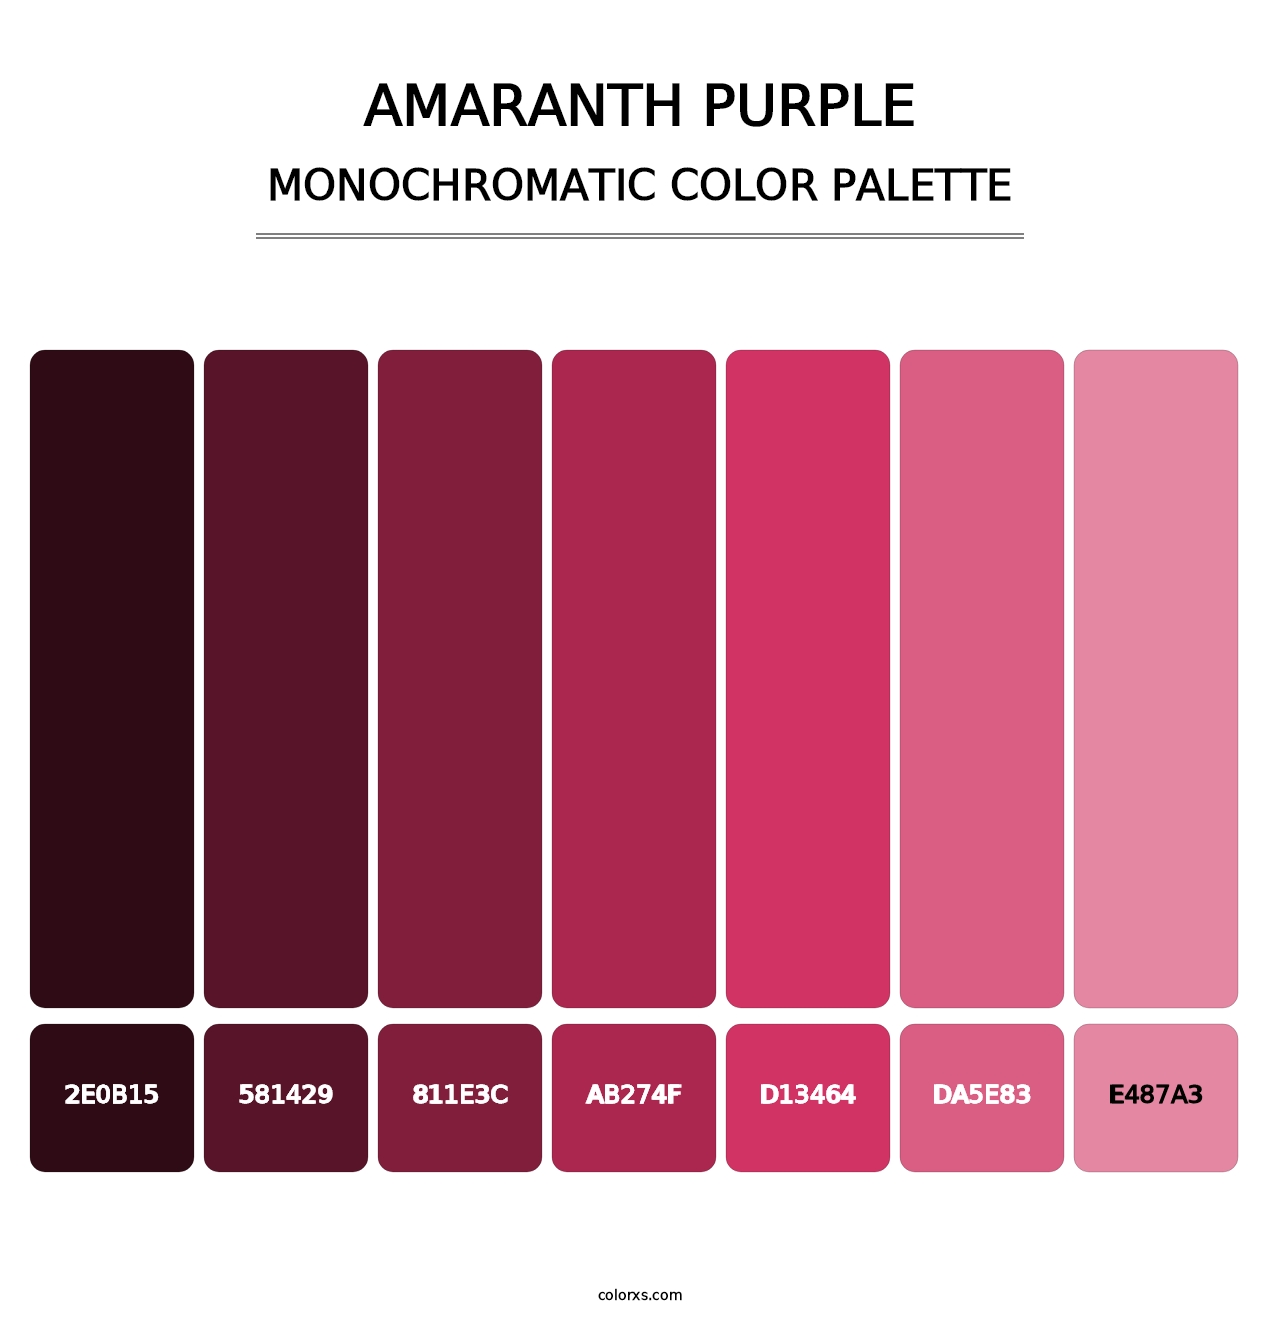 Amaranth Purple - Monochromatic Color Palette